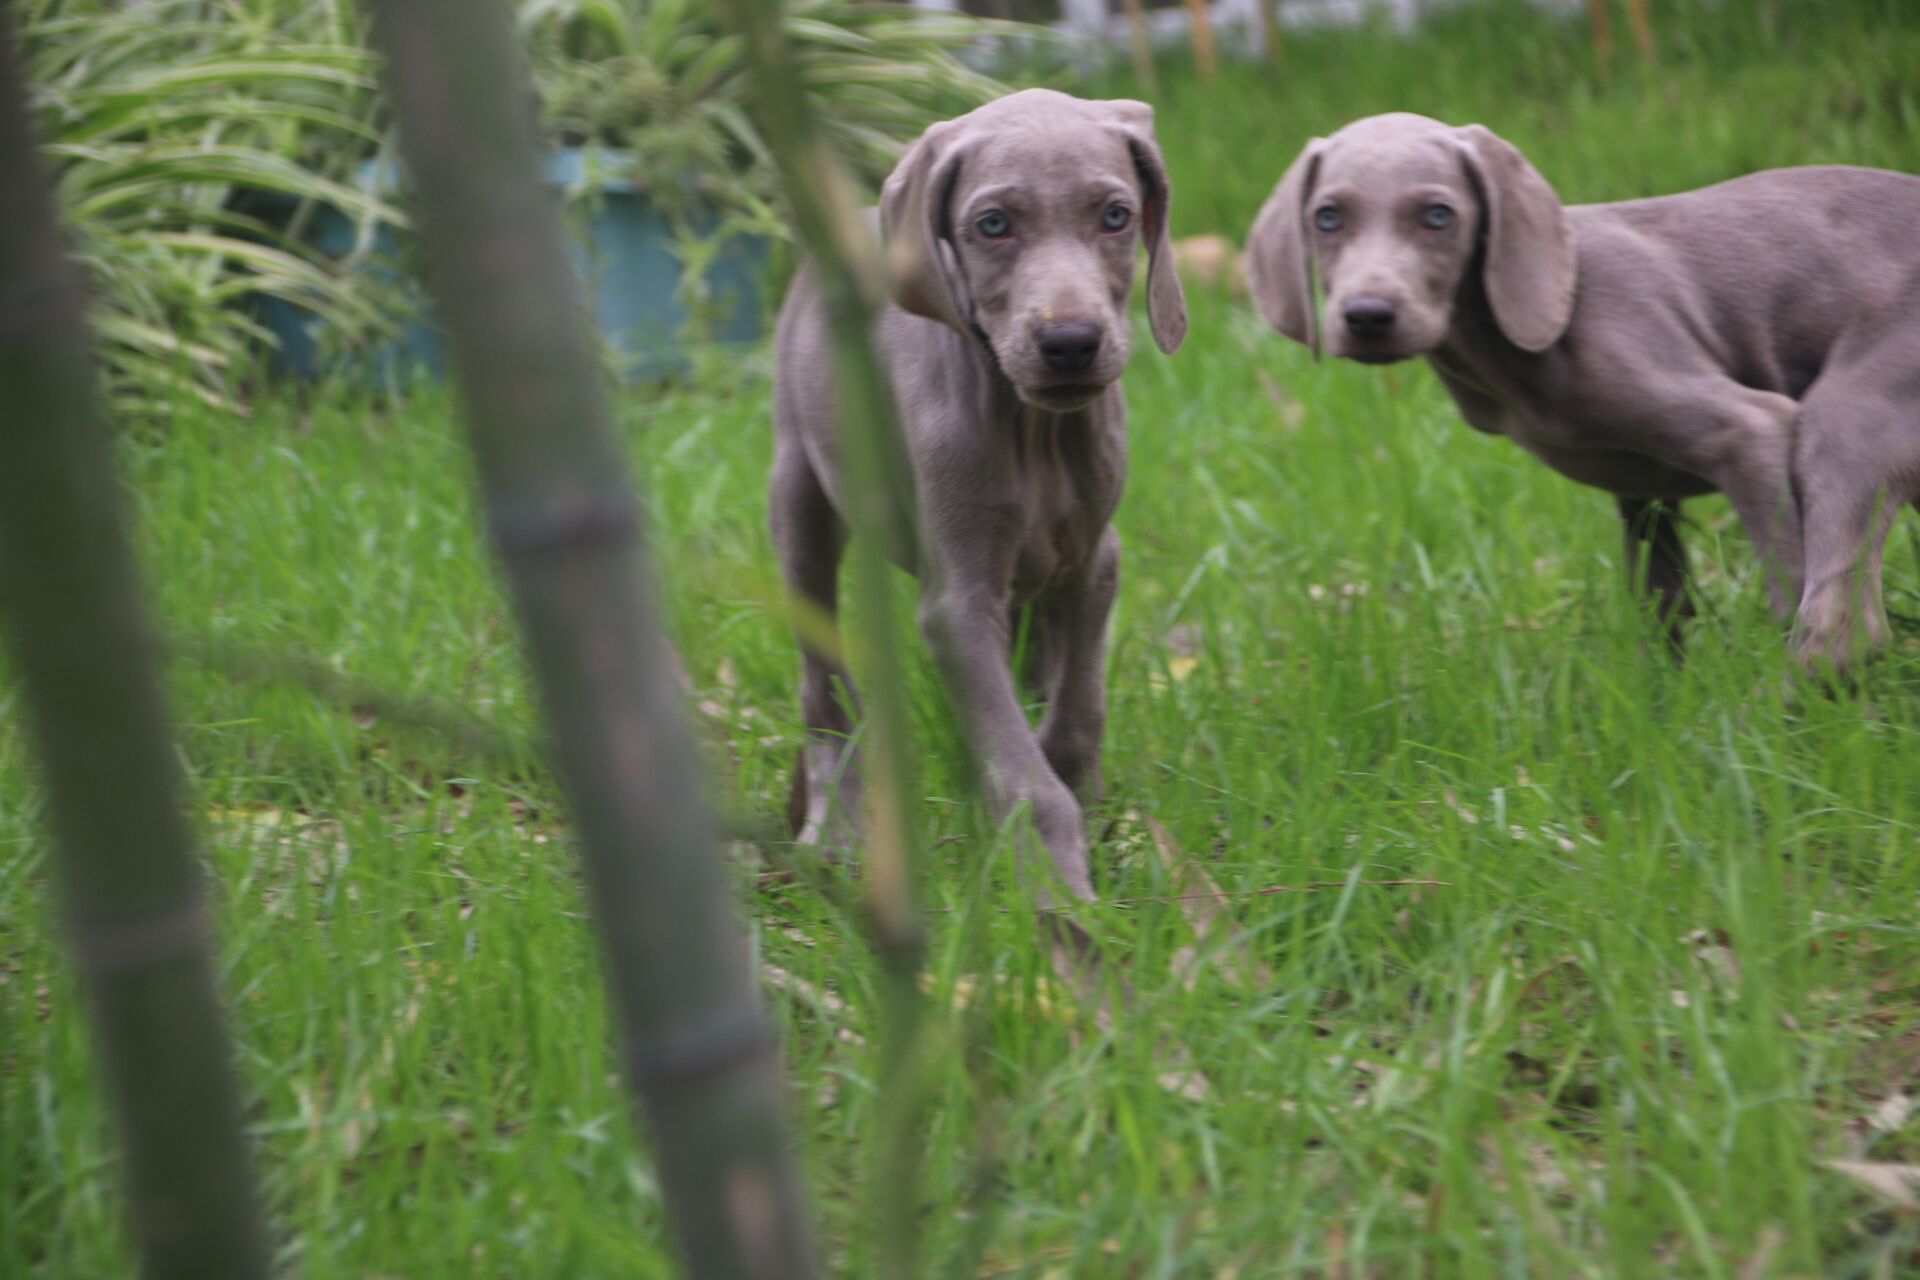 进口德国威玛猎犬 魏玛犬的价格 是多少哪有品相好的威玛猎犬 魏玛家园犬舍